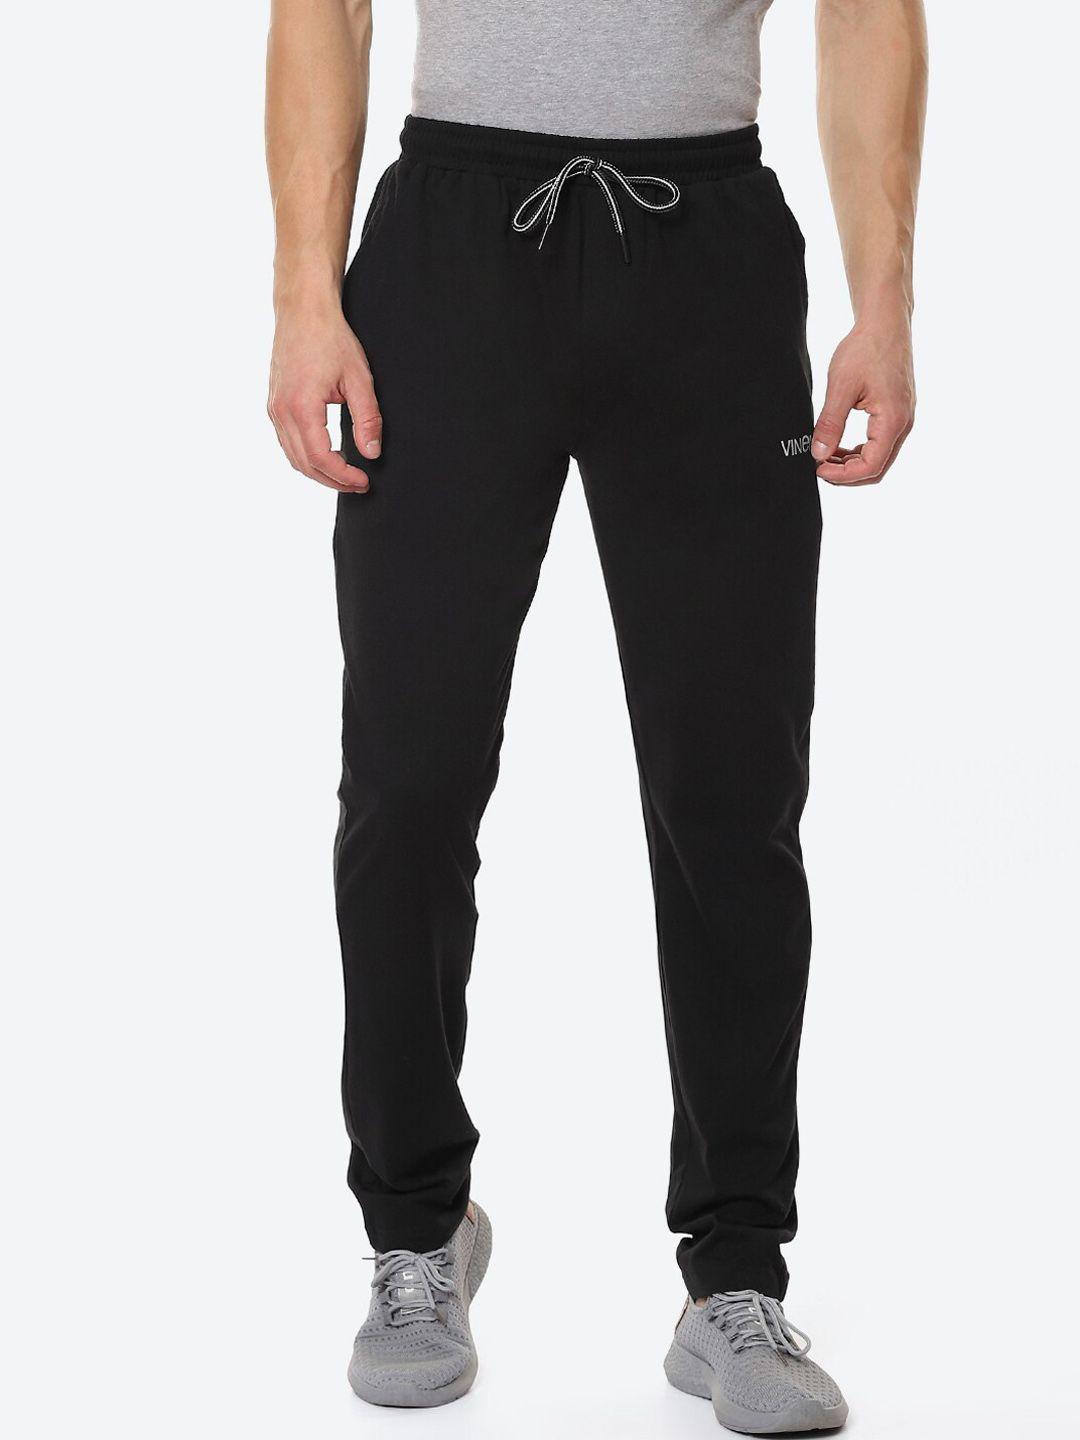 vinenzia-men-black-solid-regular-fit-track-pants